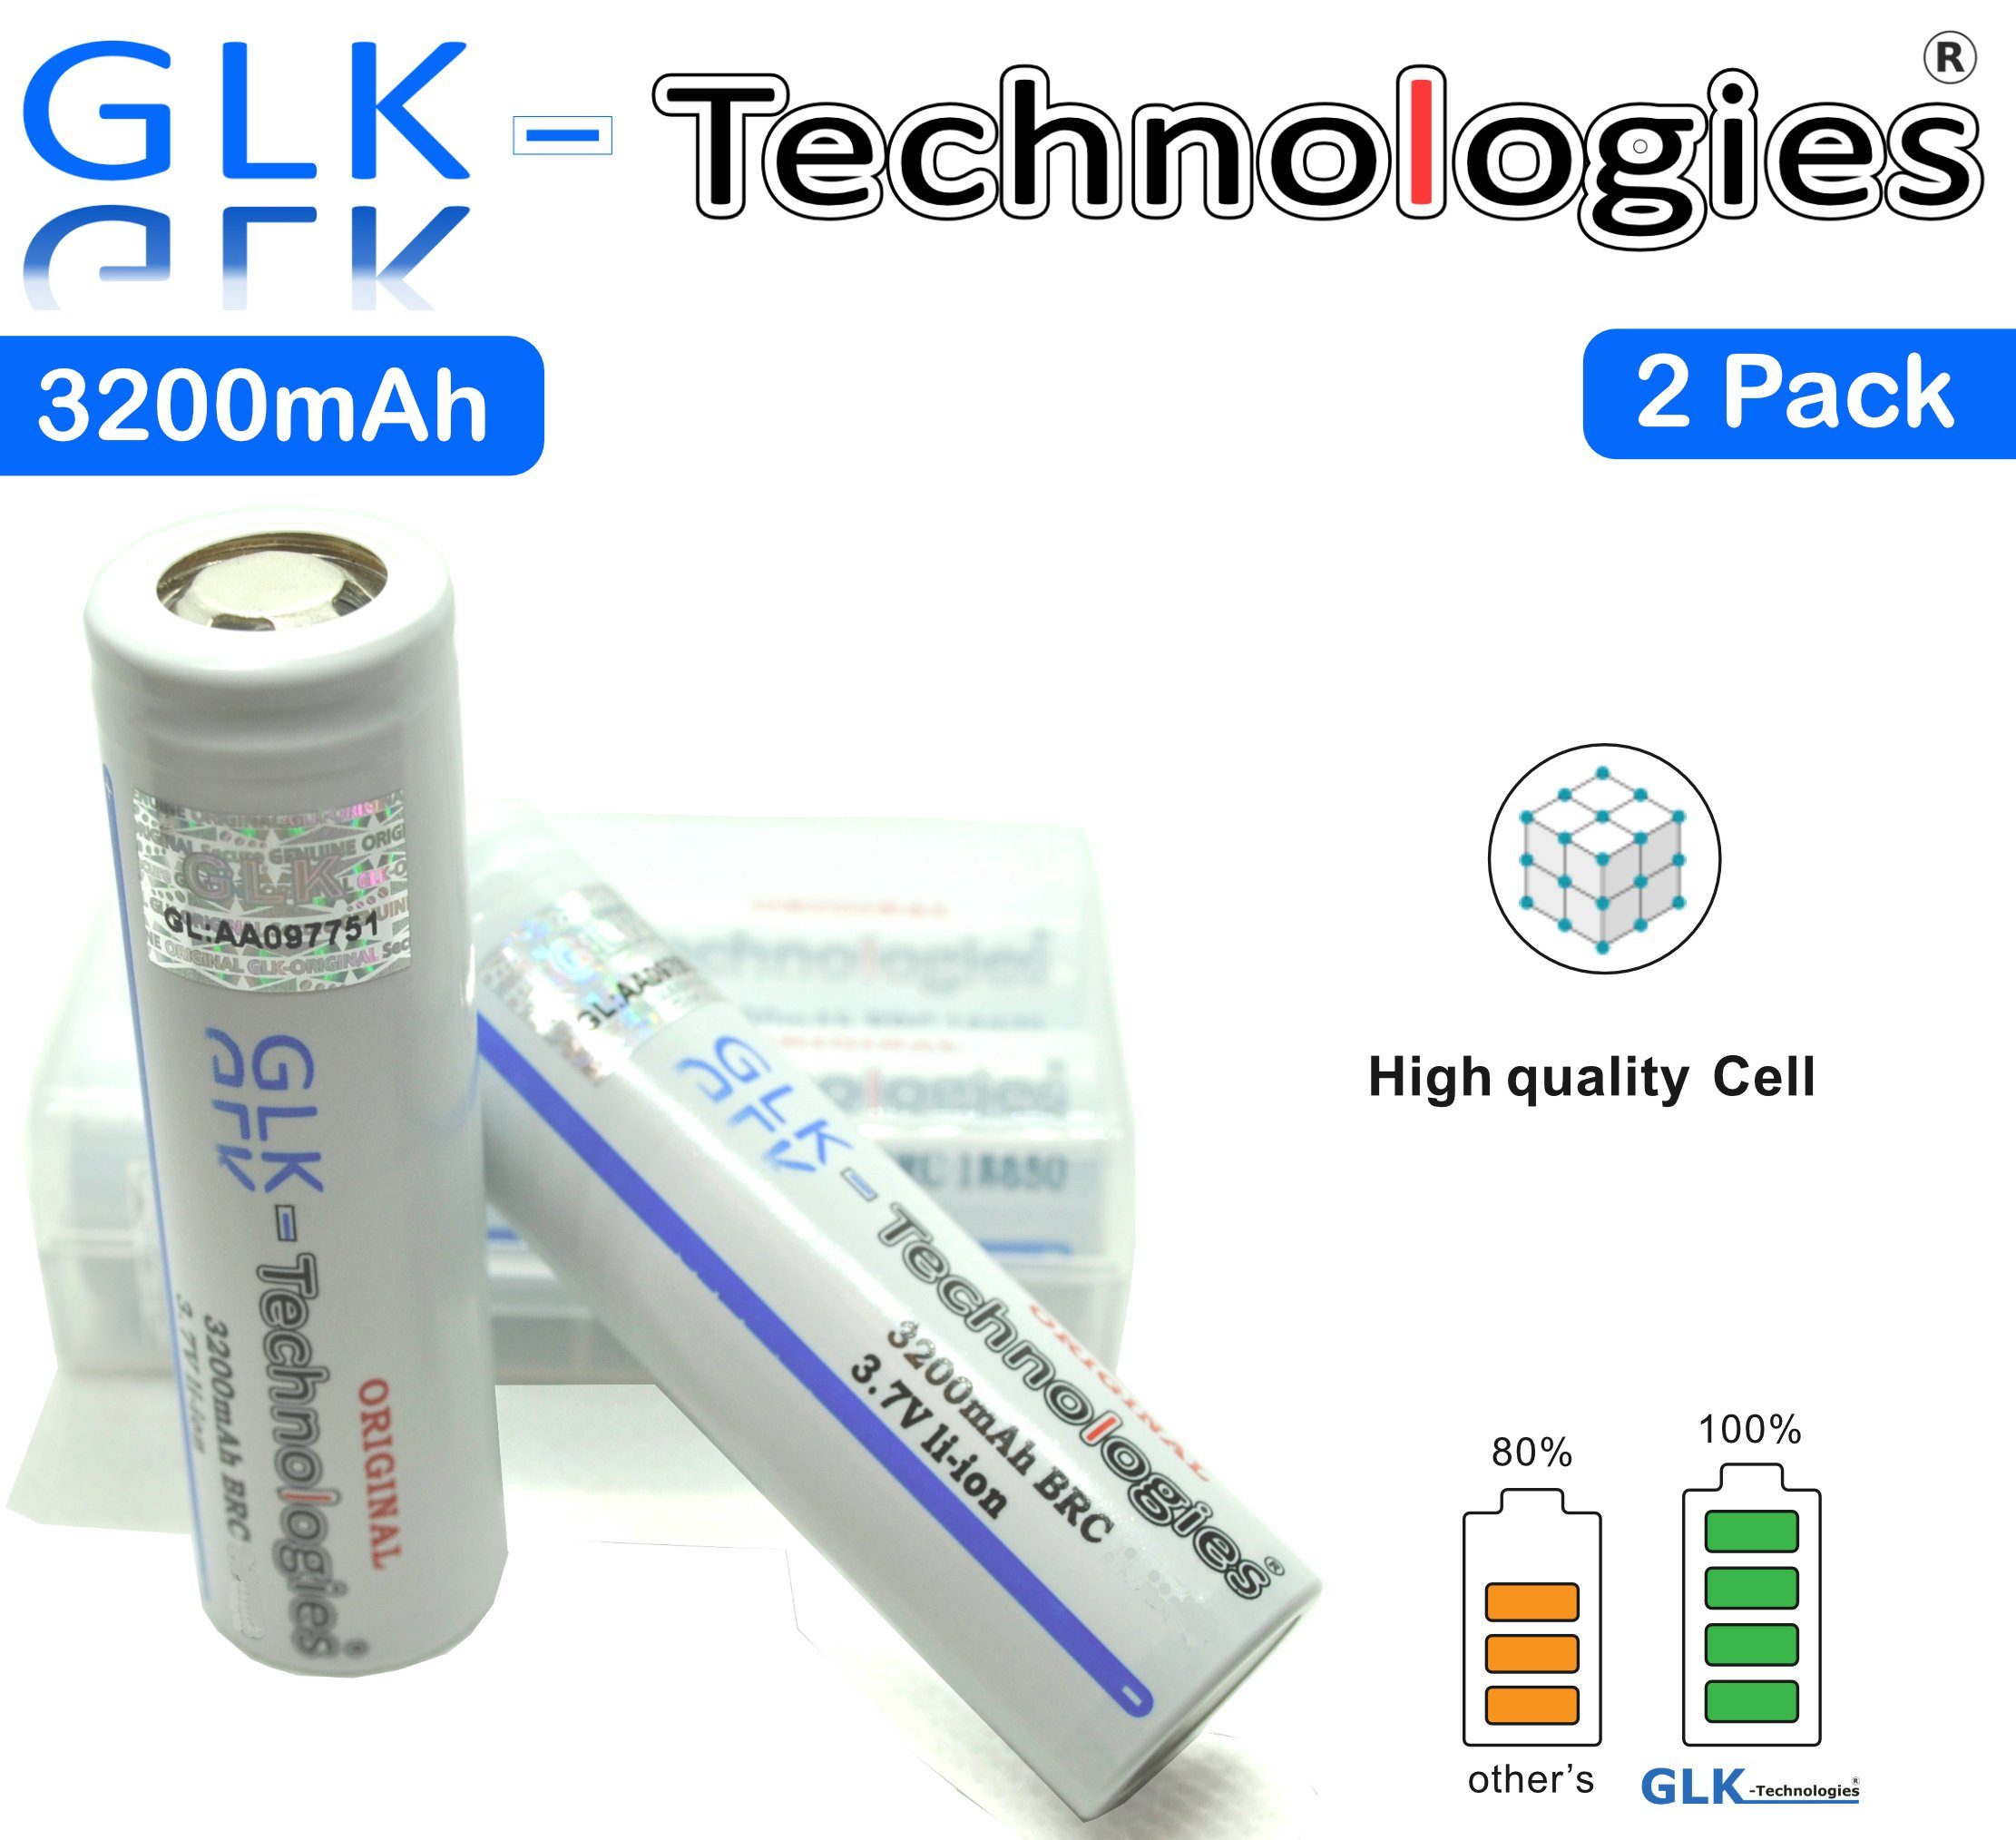 GLK-Technologies 2 Pack High Power Akkuzellen VTC6, 3200 mAh, 30A / 3,7V Akku LED Taschenlampe E-Zigaretten, GLK-Technologies Wiederaufladbarer Batterie, INR18650-M35A 18650 2022 B.j Zusatz-Akku 3200 mAh (3.7 V)